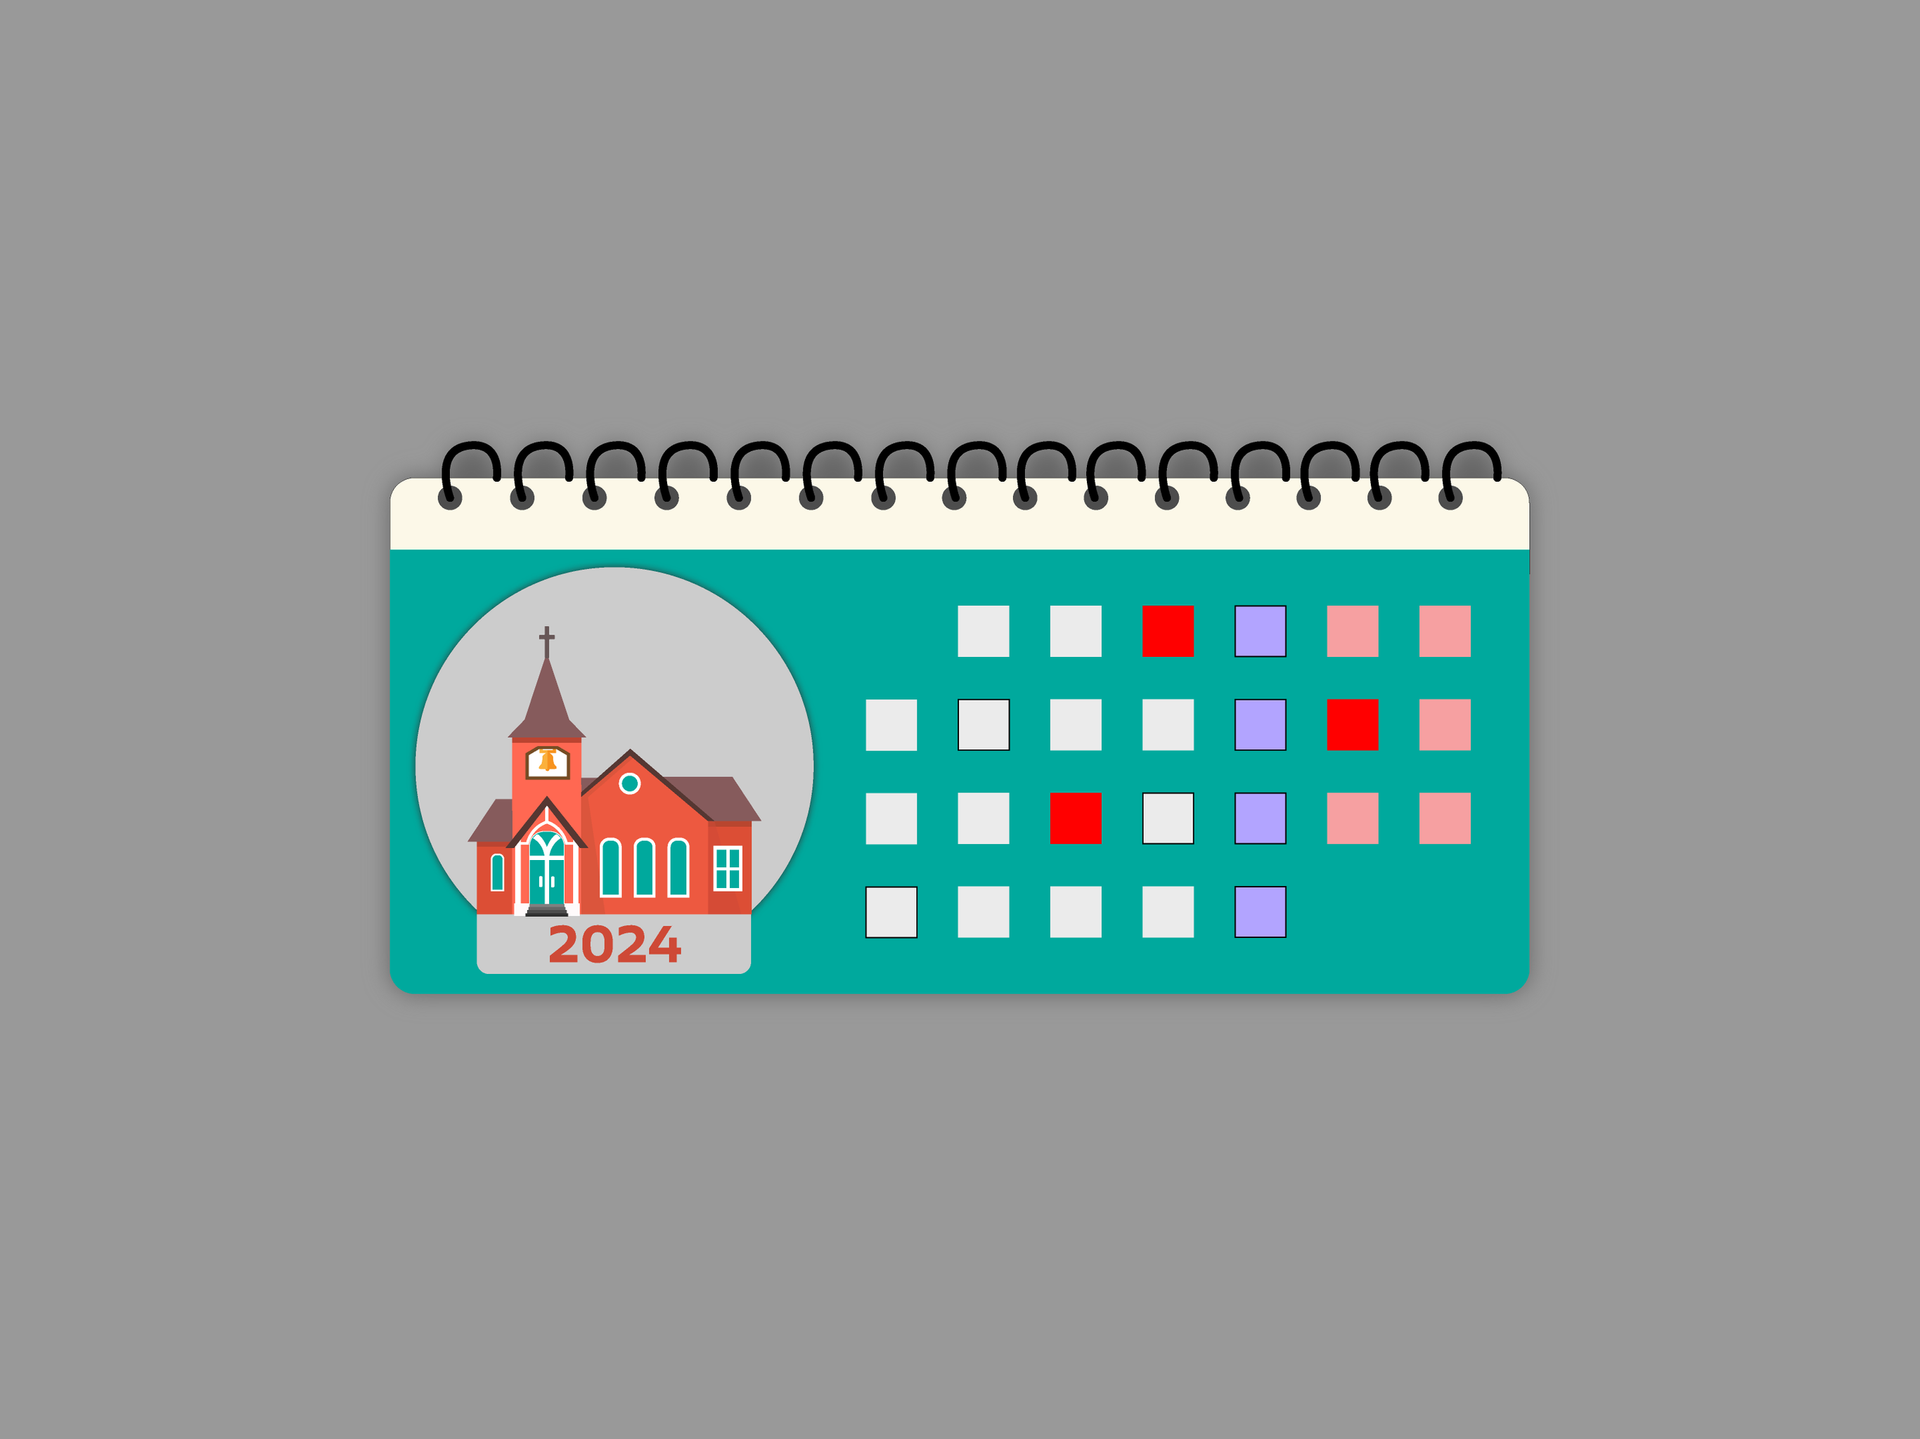 Календарь католических праздников на 2024 год - 22.11.2023, Sputnik Беларусь